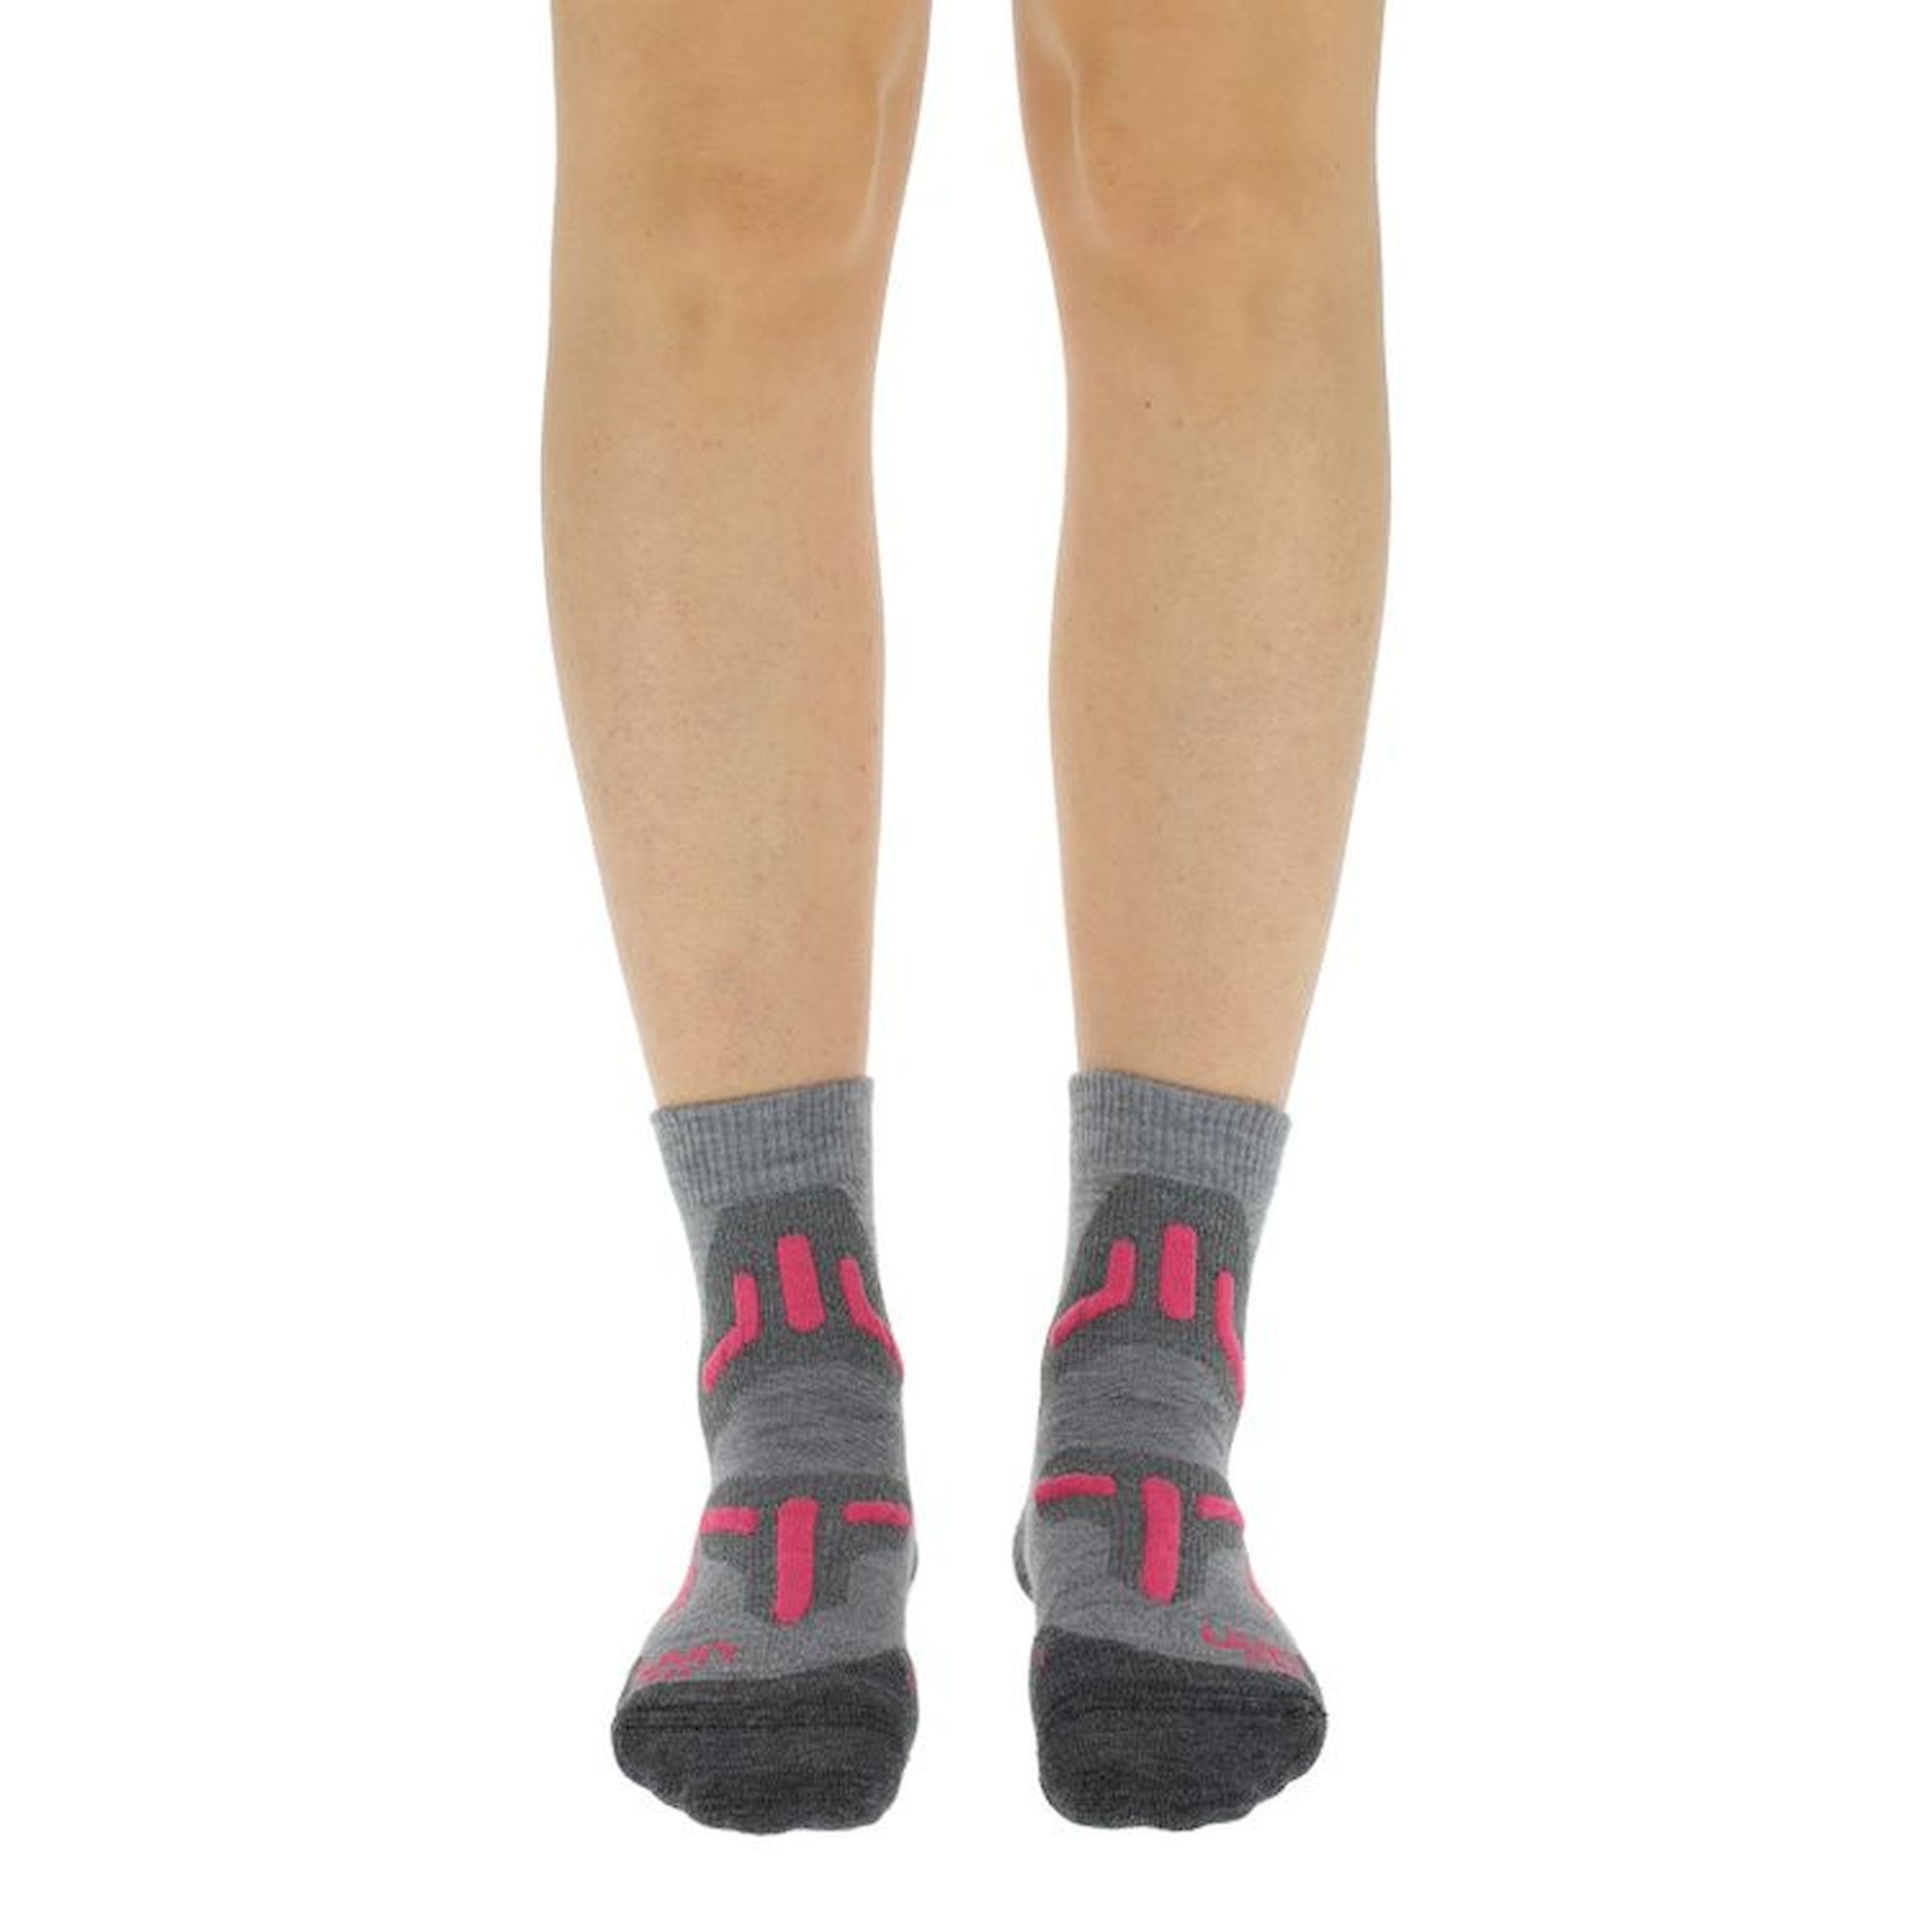 Uyn Trekking 2In Merino Low Cut Socks - Hiking socks - Women's